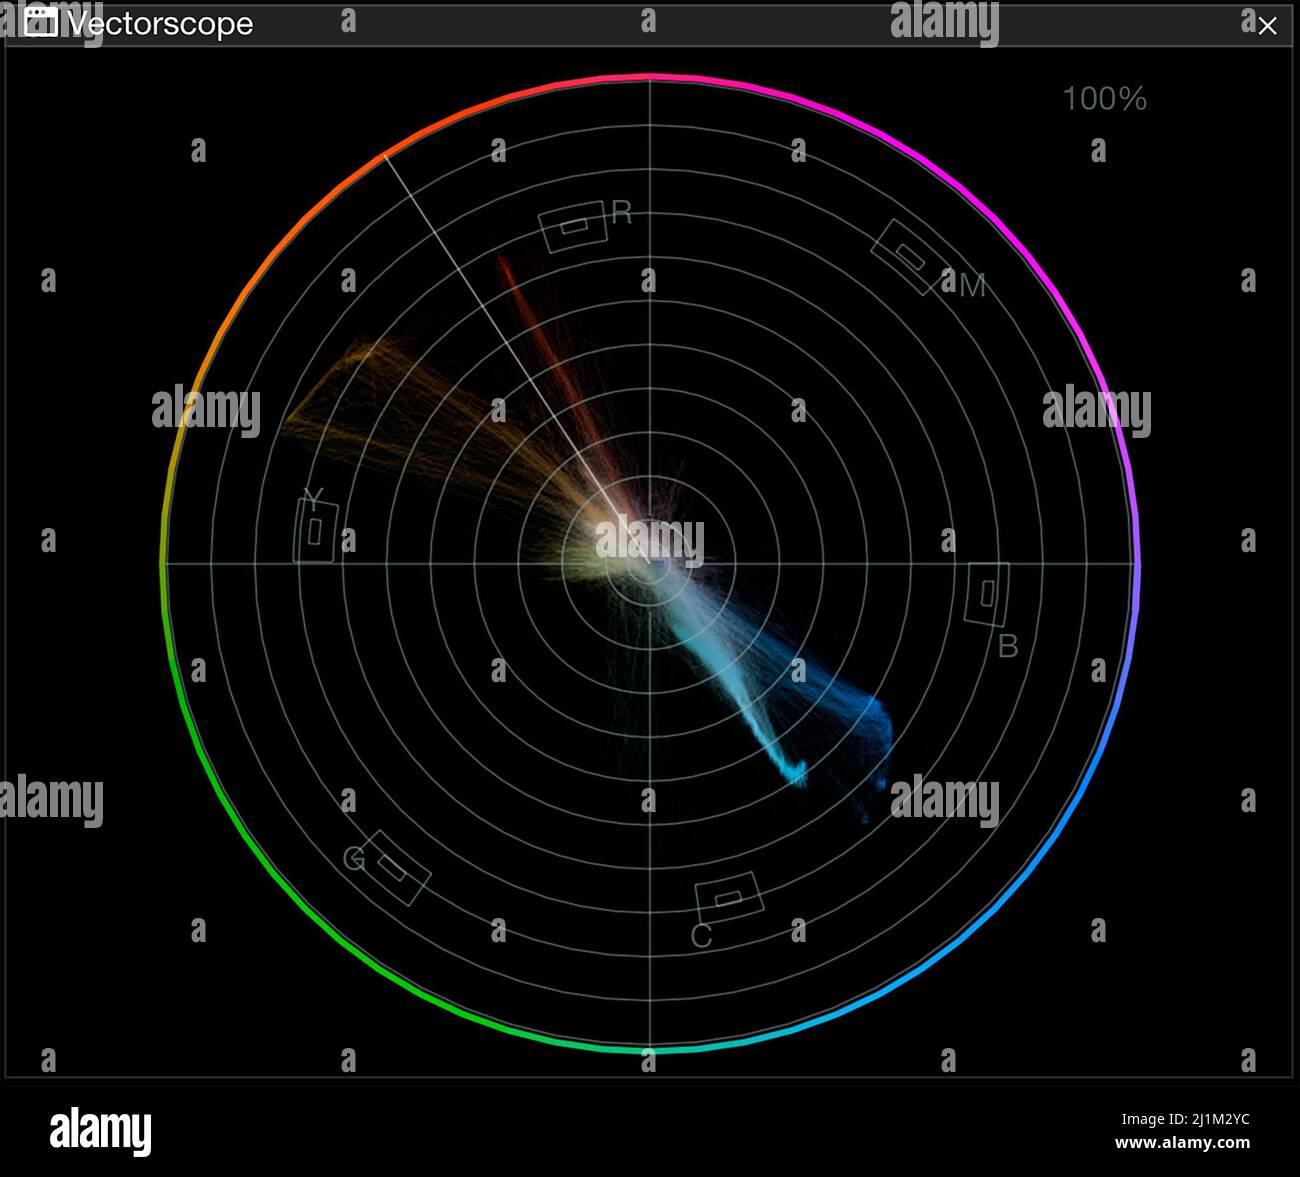 Vektorskop-Plot mit Analyse der Farben mit Alamy-Bild MXEWGX. Plot wurde mit der Software Nobe Omniscope erstellt. Stockfoto